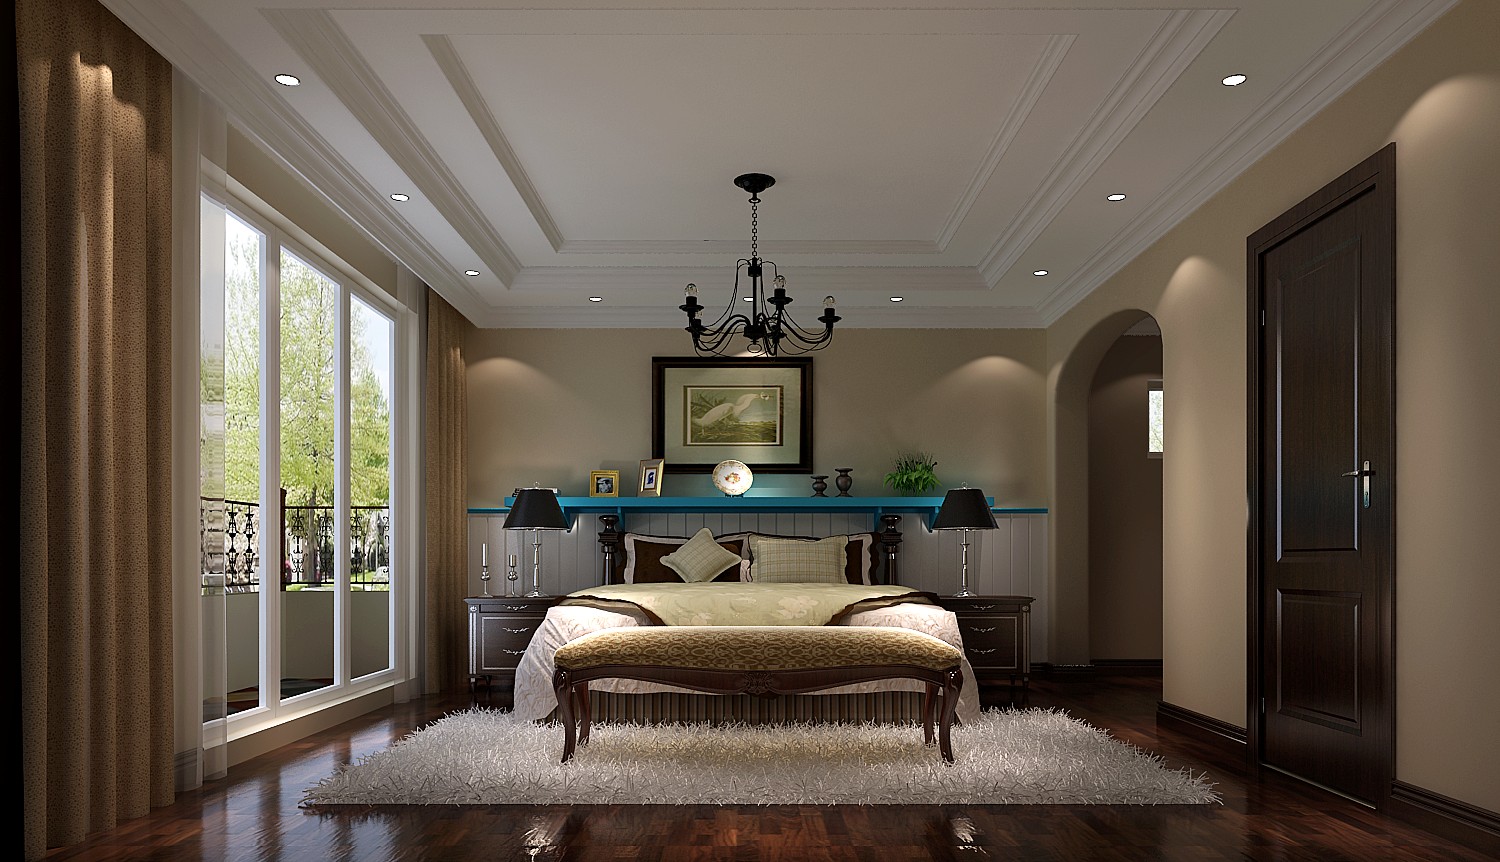 简约 别墅 美式 自由 温馨 卧室图片来自say简单在潮白河孔雀城托斯卡纳风格的分享